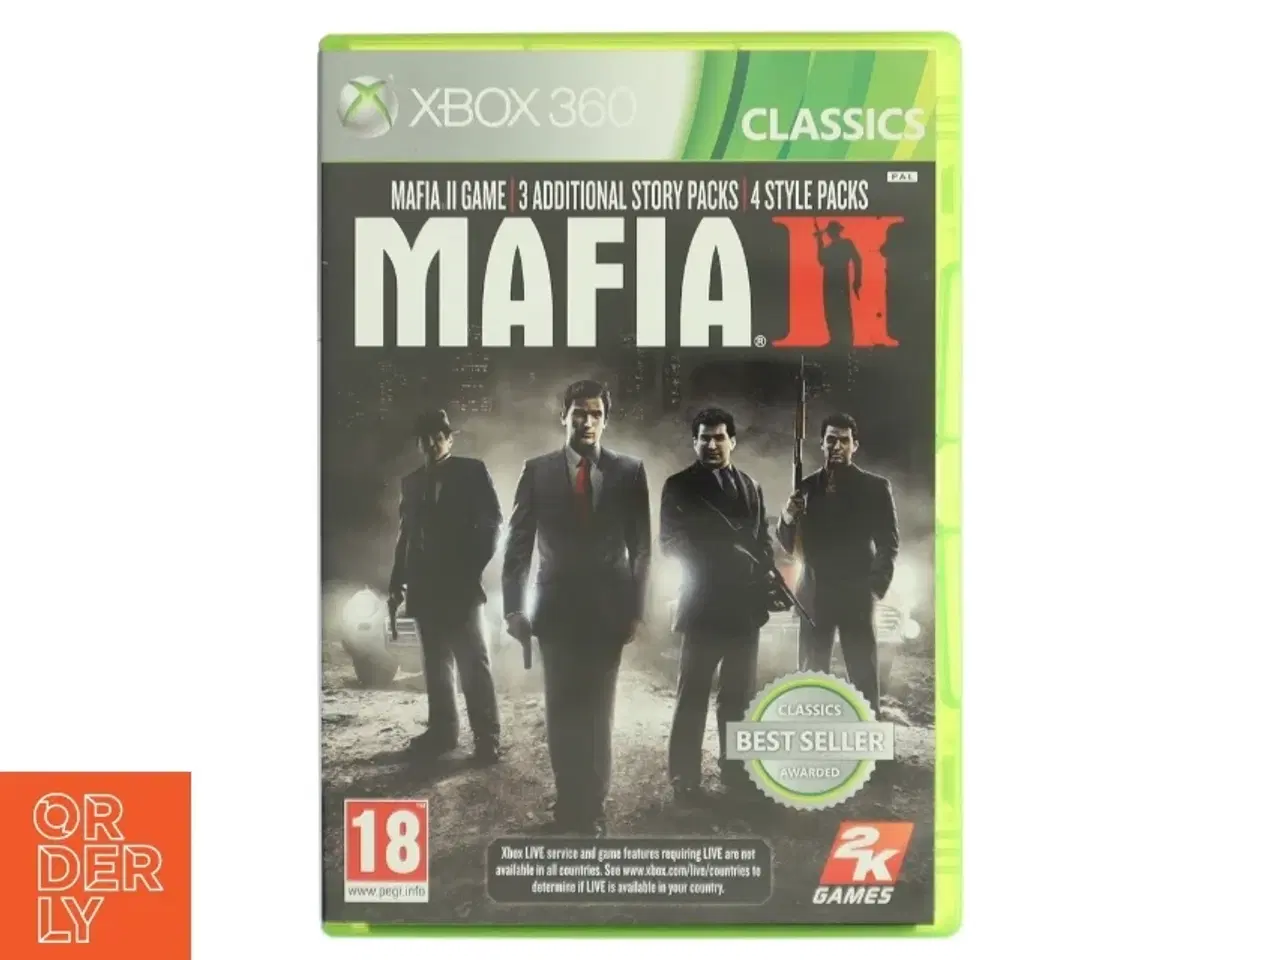 Billede 1 - Mafia II fra x box